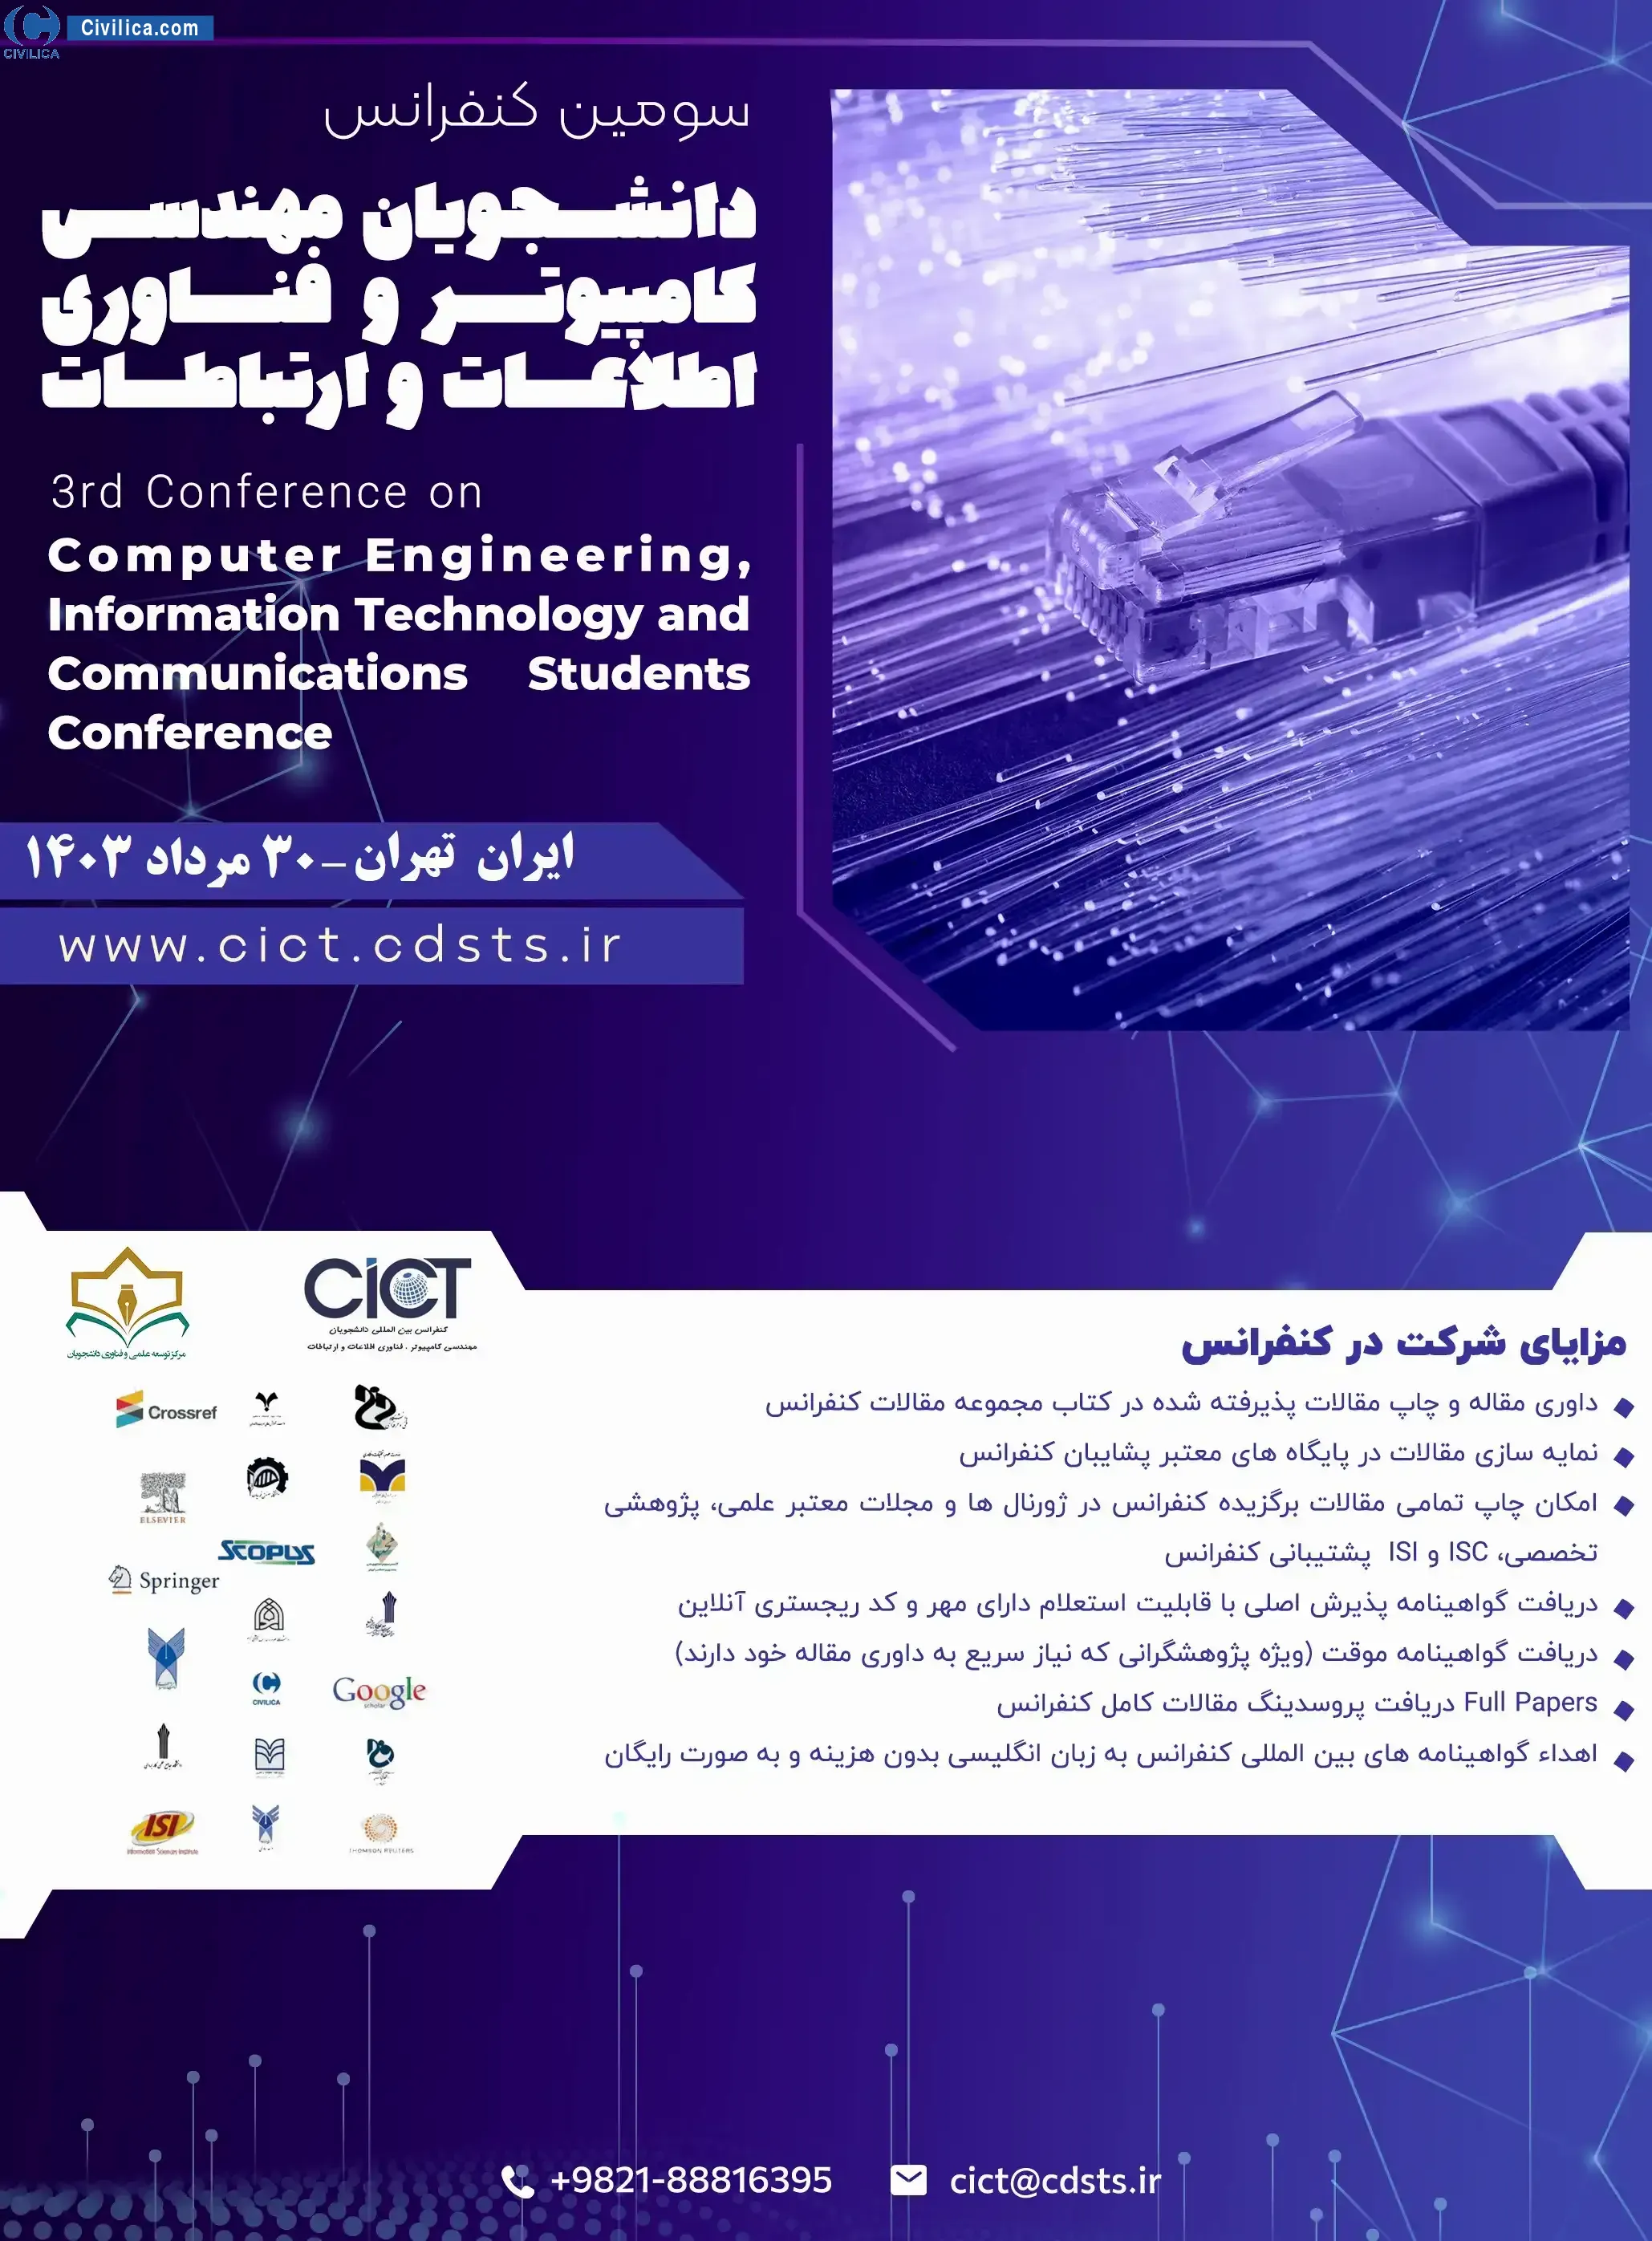 سومین کنفرانس دانشجویان مهندسی کامپیوتر و فناوری اطلاعات و ارتباطات